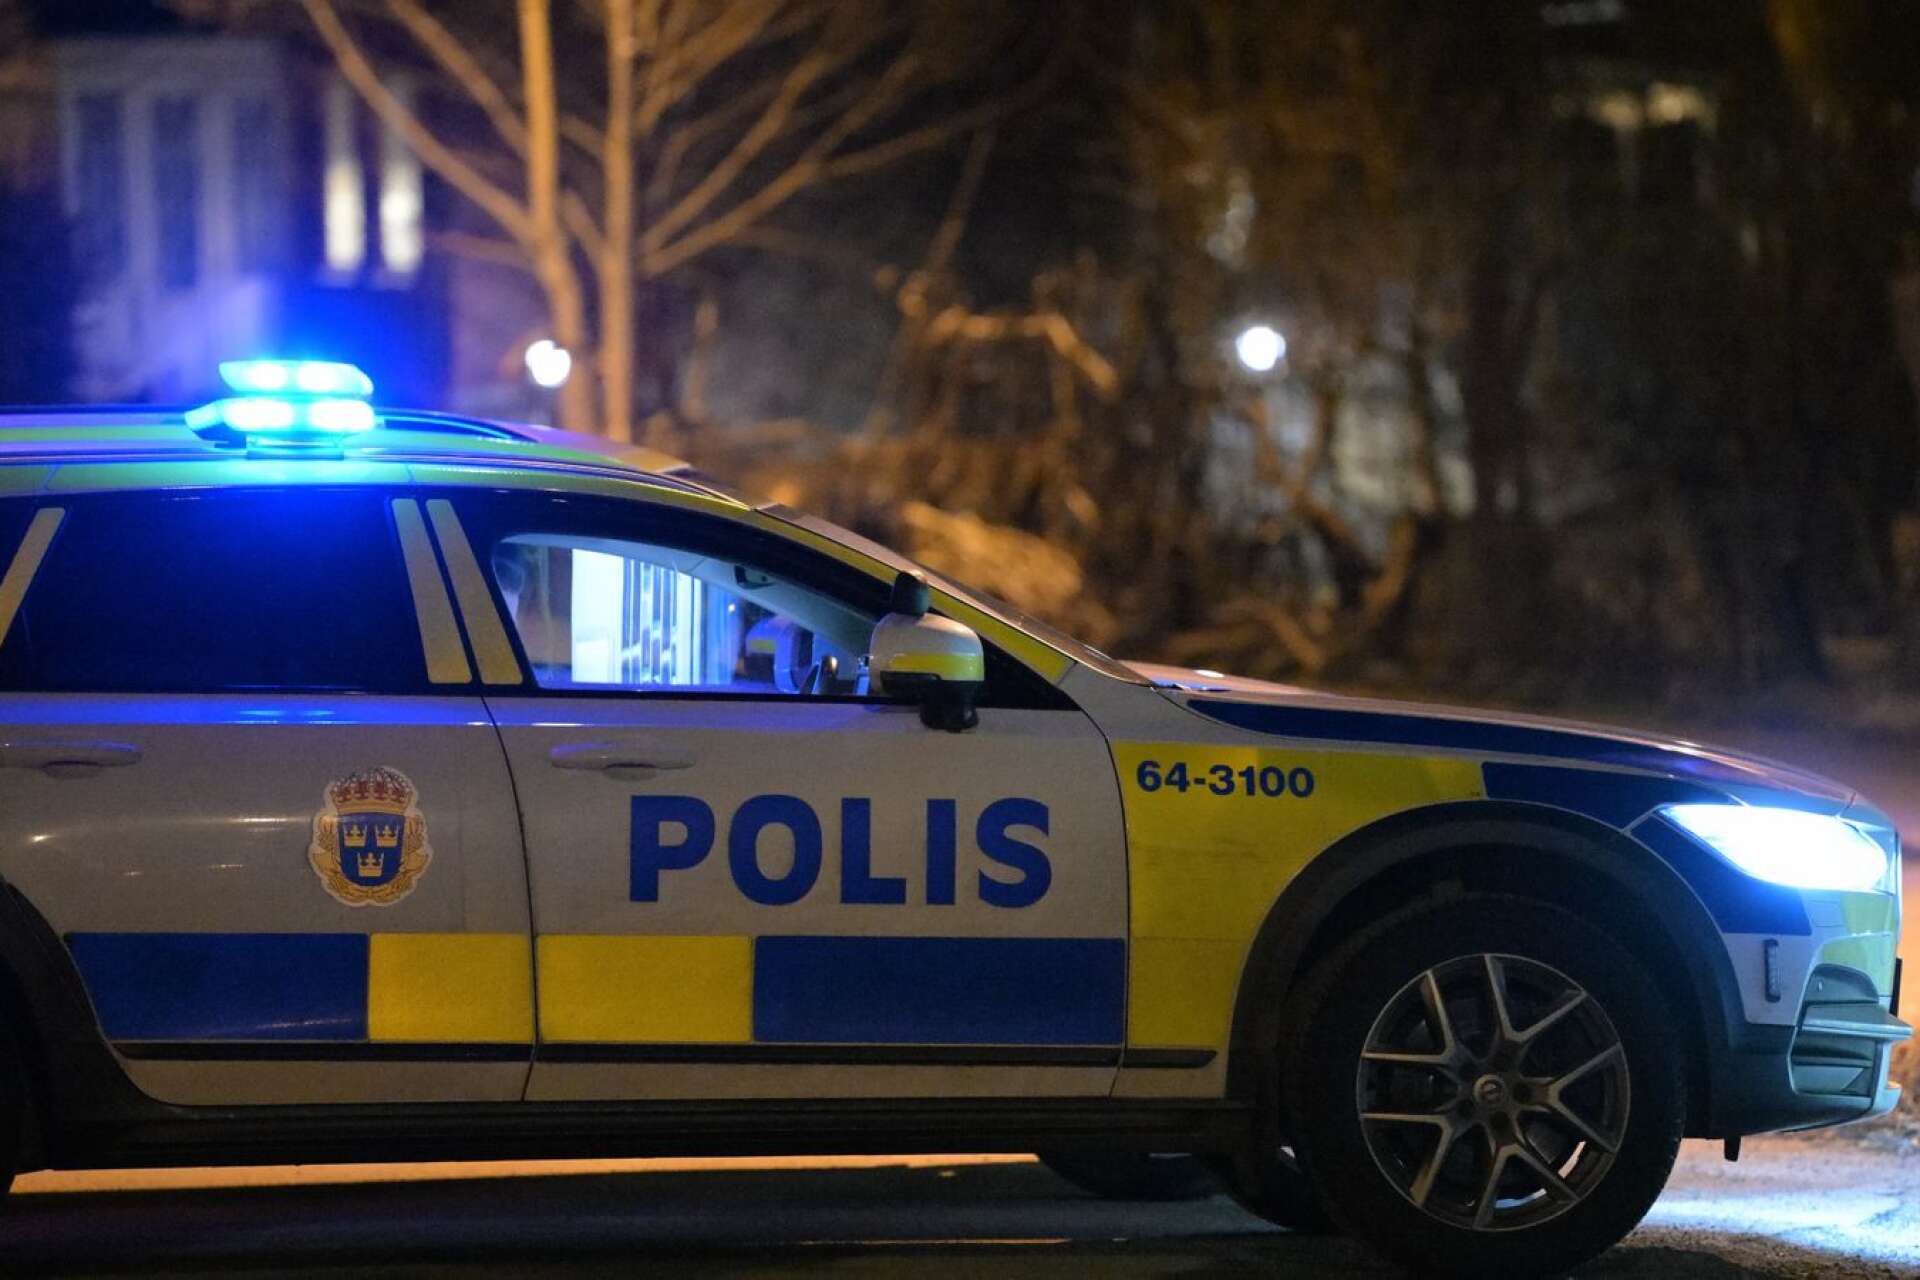 Polisen skulle stoppa en bil i Mo norr om Åmål, men föraren smet.